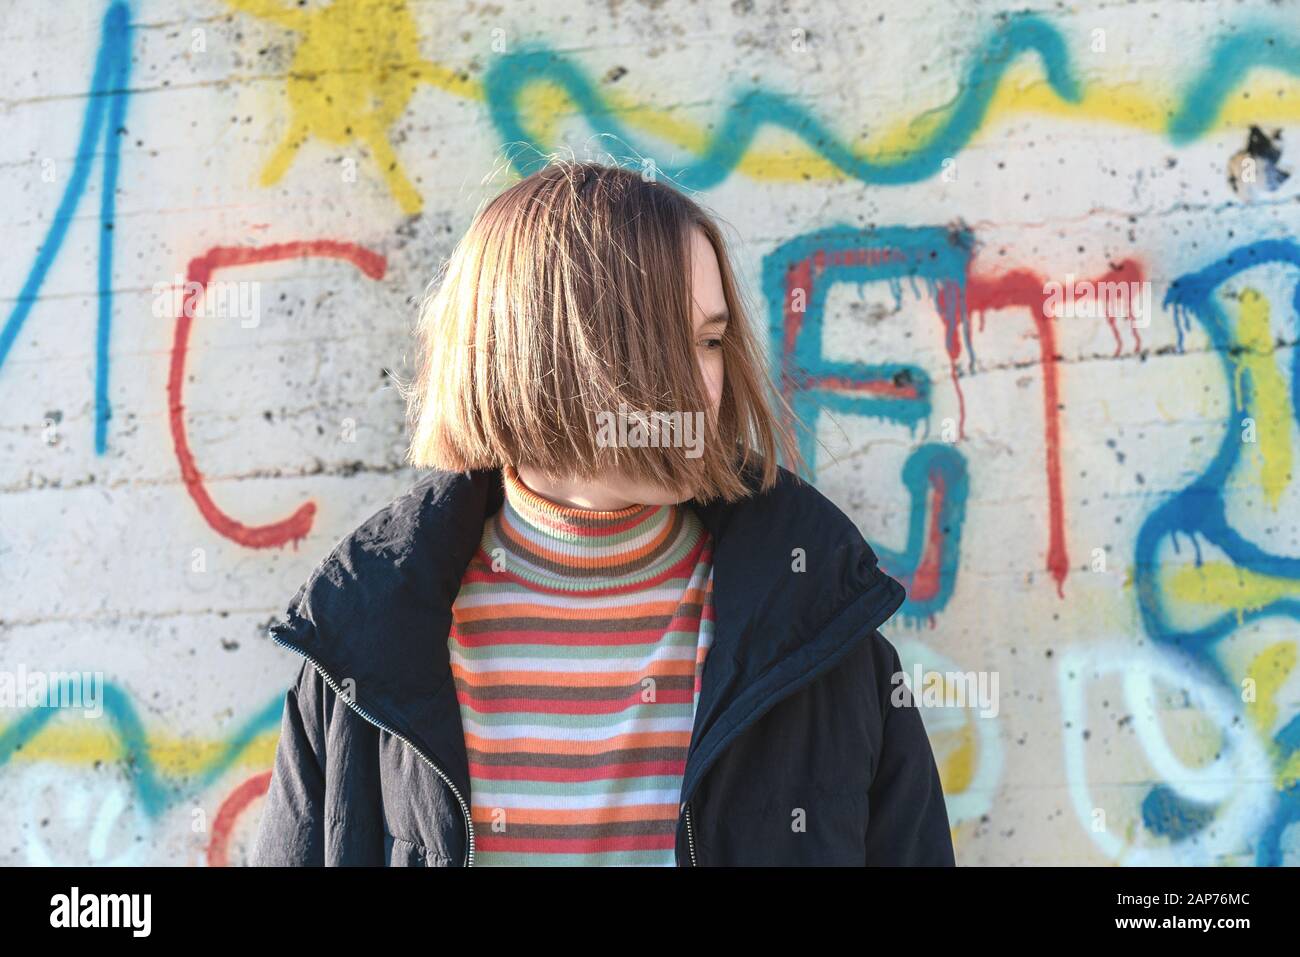 Bella ragazza adolescente con capelli corti che posano vicino alla parete graffiti. Urbano all'aperto, stile di vita adolescente Foto Stock